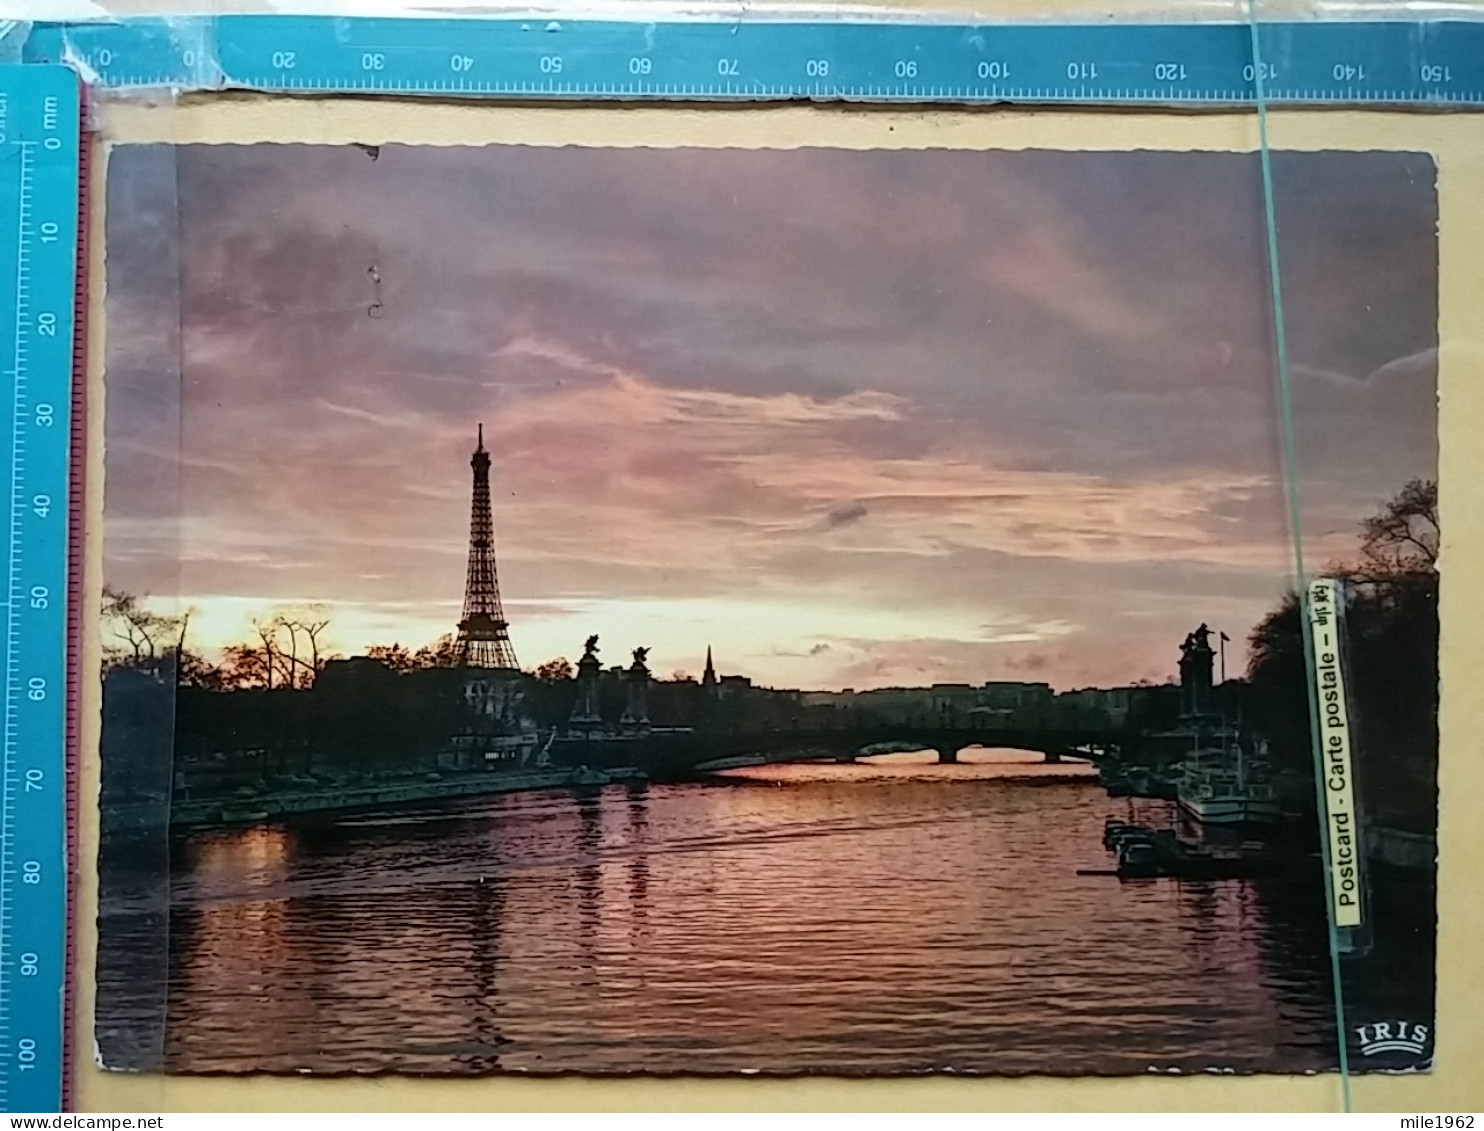 KOV 11-99 - PARIS, France, Tour Eiffel - Tour Eiffel